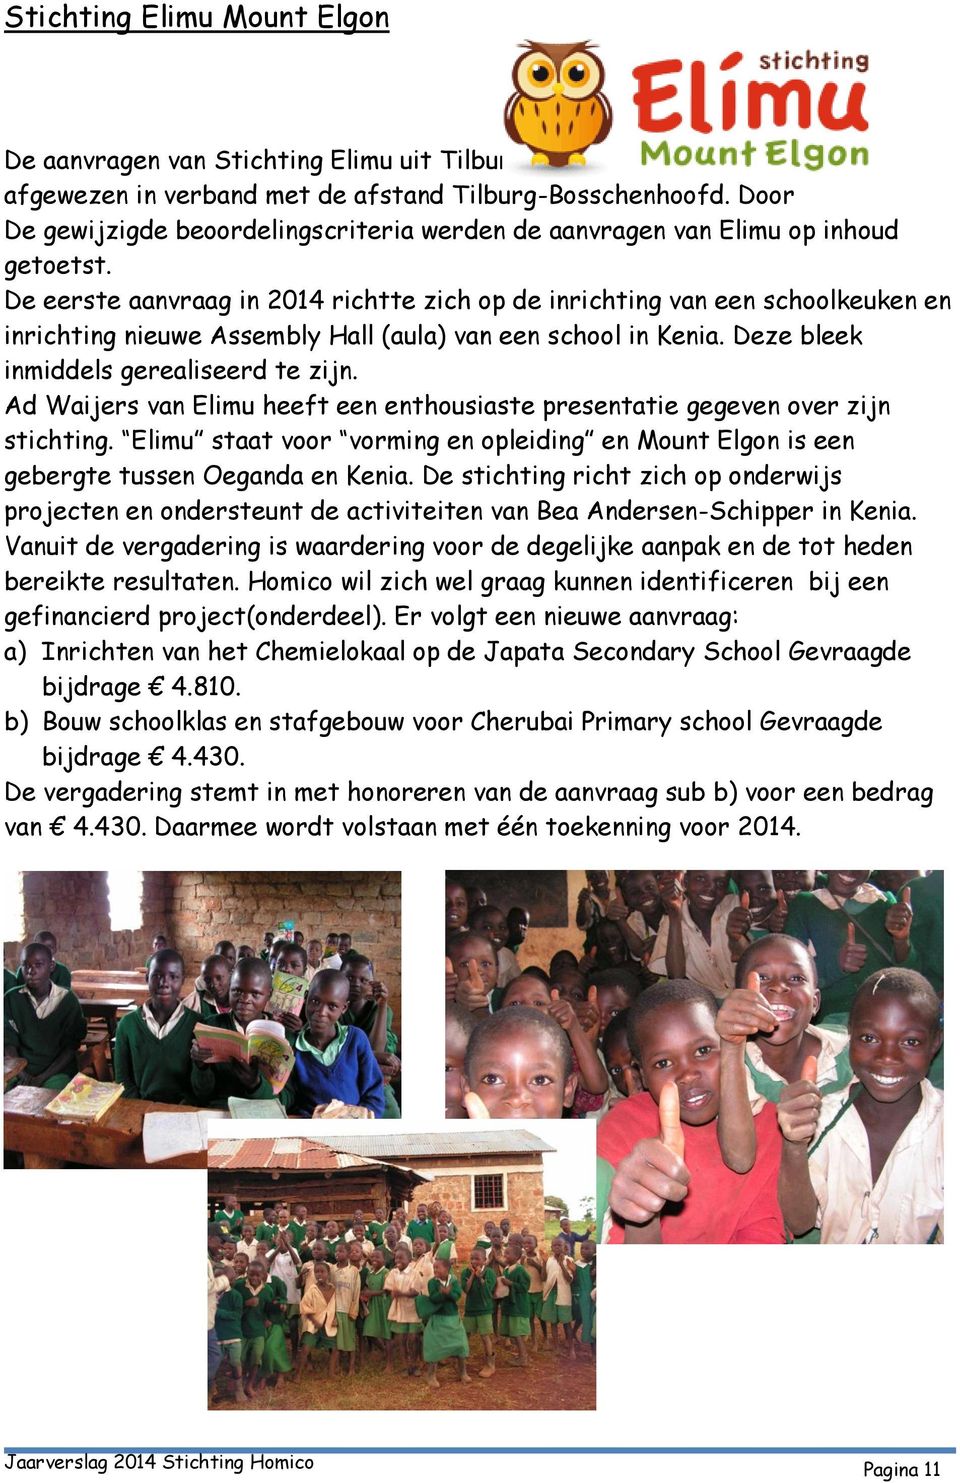 De eerste aanvraag in 2014 richtte zich op de inrichting van een schoolkeuken en inrichting nieuwe Assembly Hall (aula) van een school in Kenia. Deze bleek inmiddels gerealiseerd te zijn.